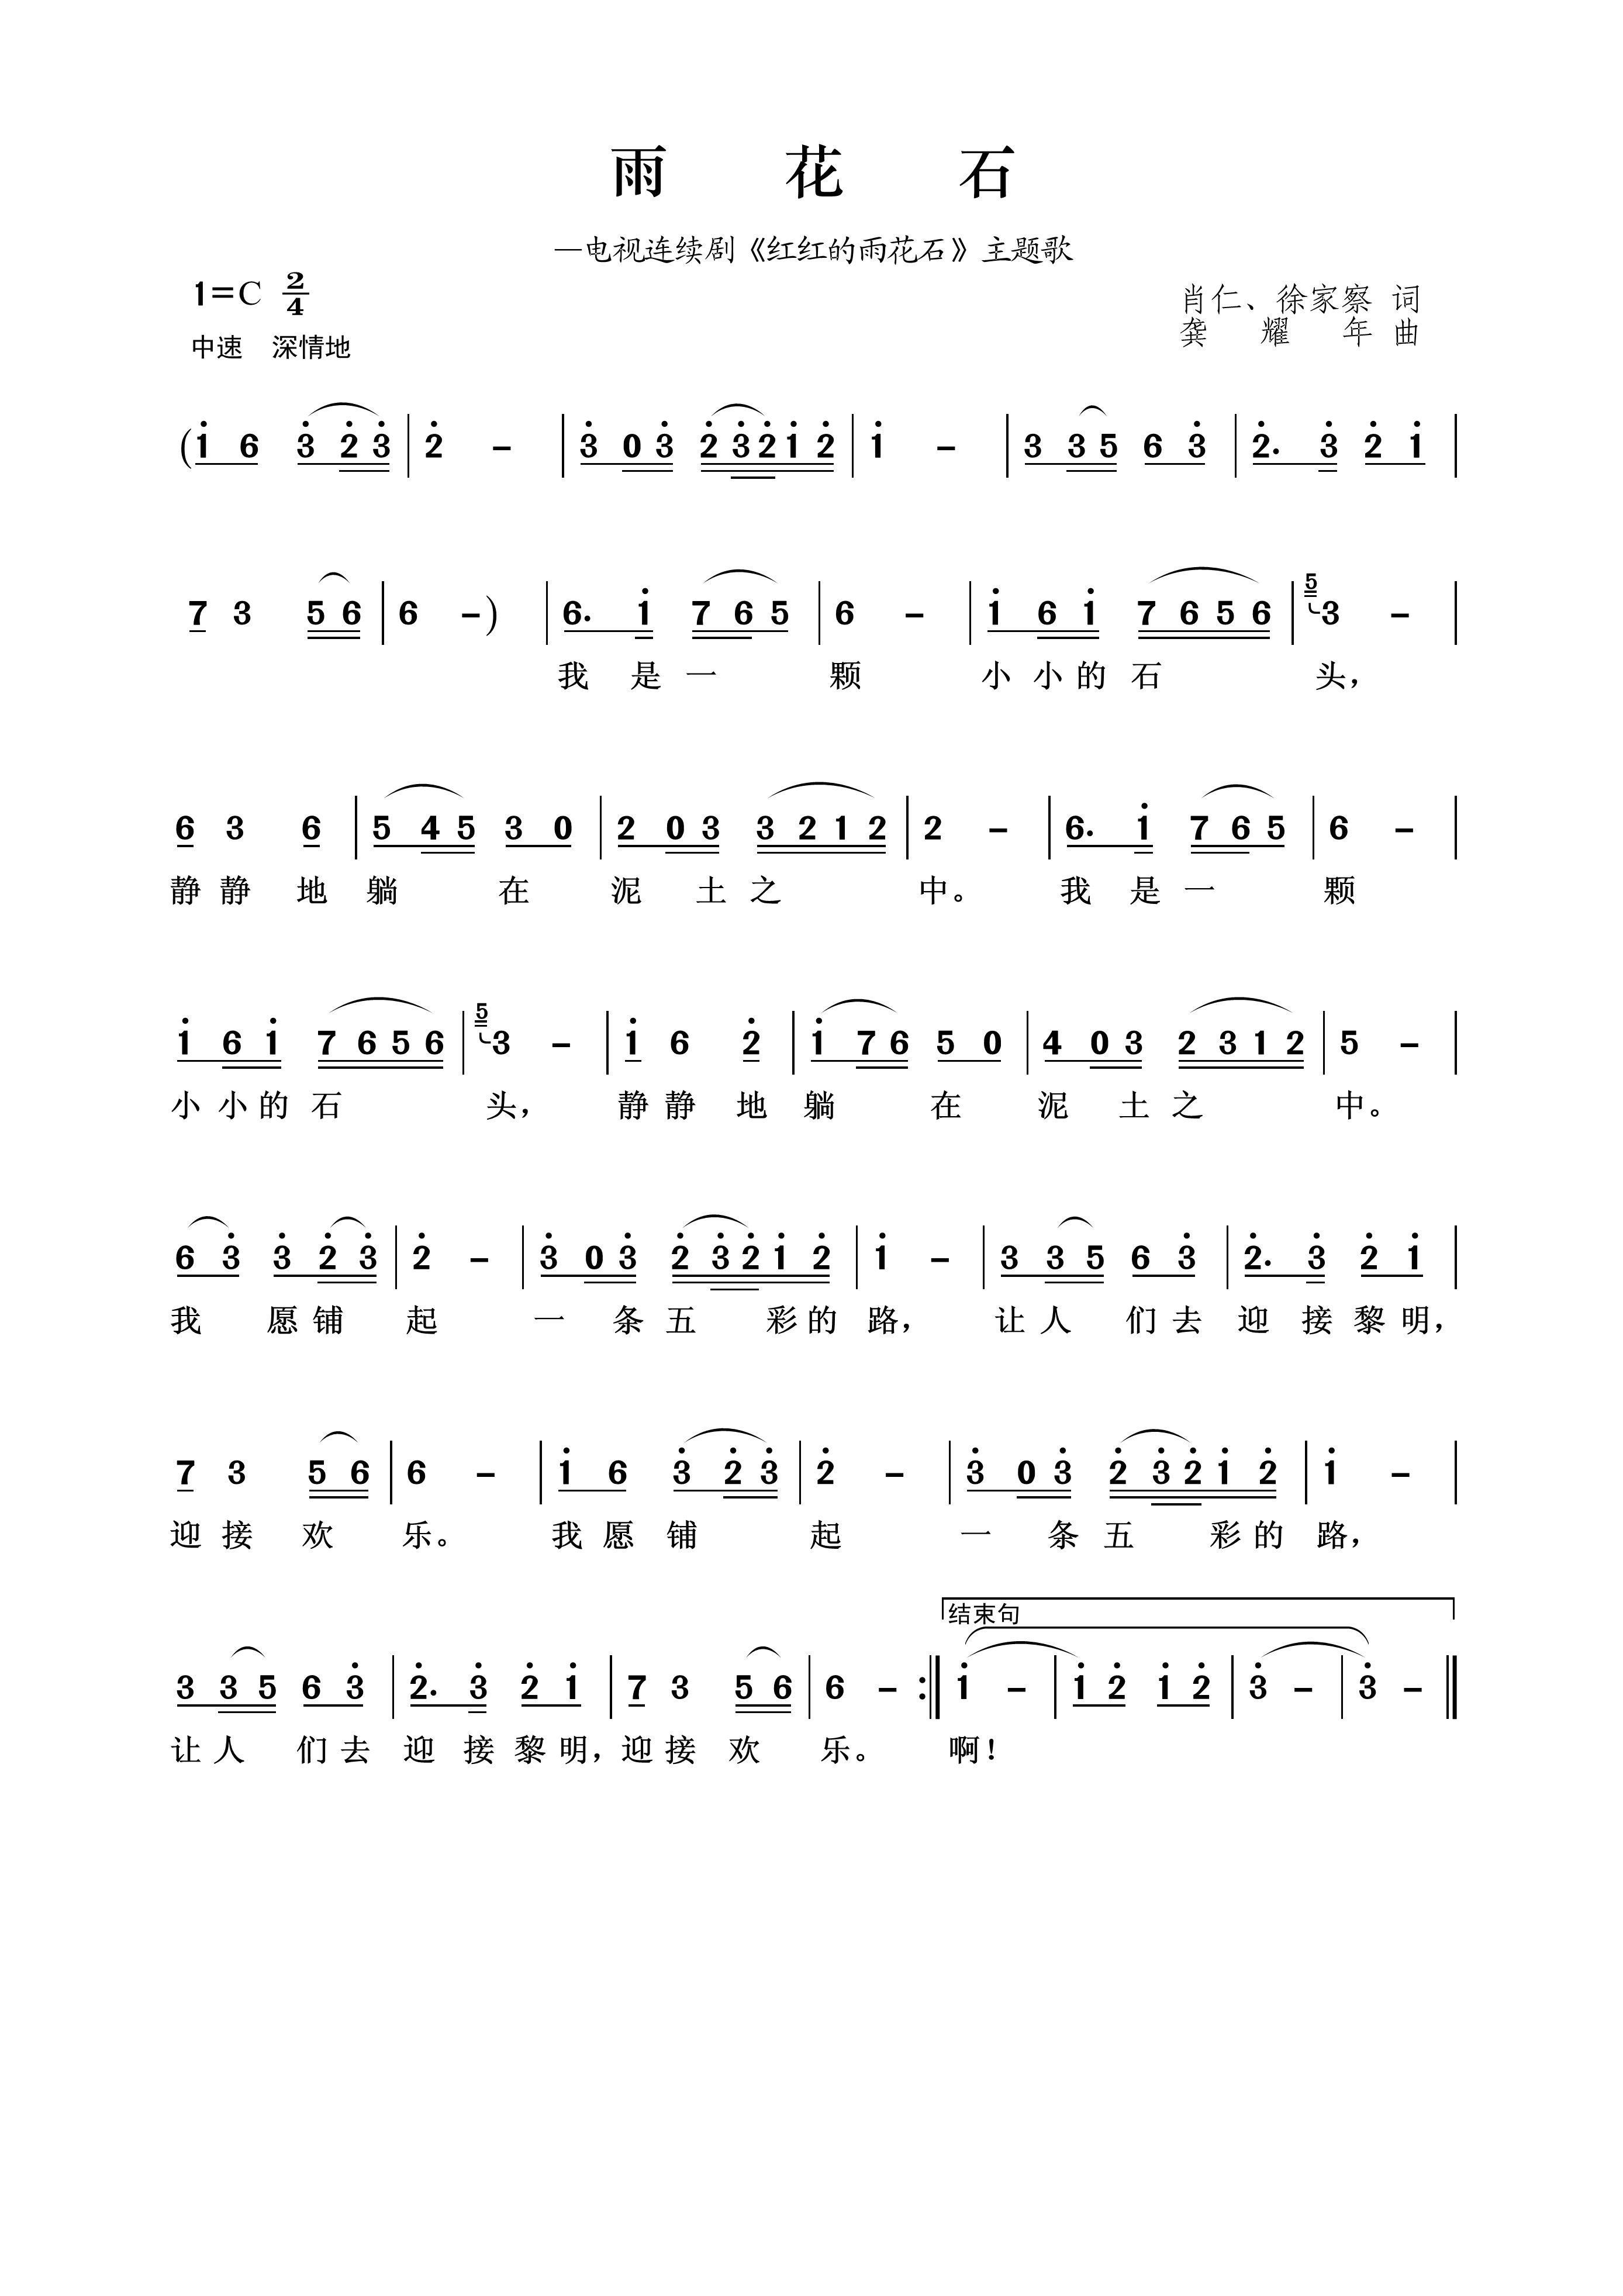 雨花石-儿歌五线谱预览1-钢琴谱文件（五线谱、双手简谱、数字谱、Midi、PDF）免费下载